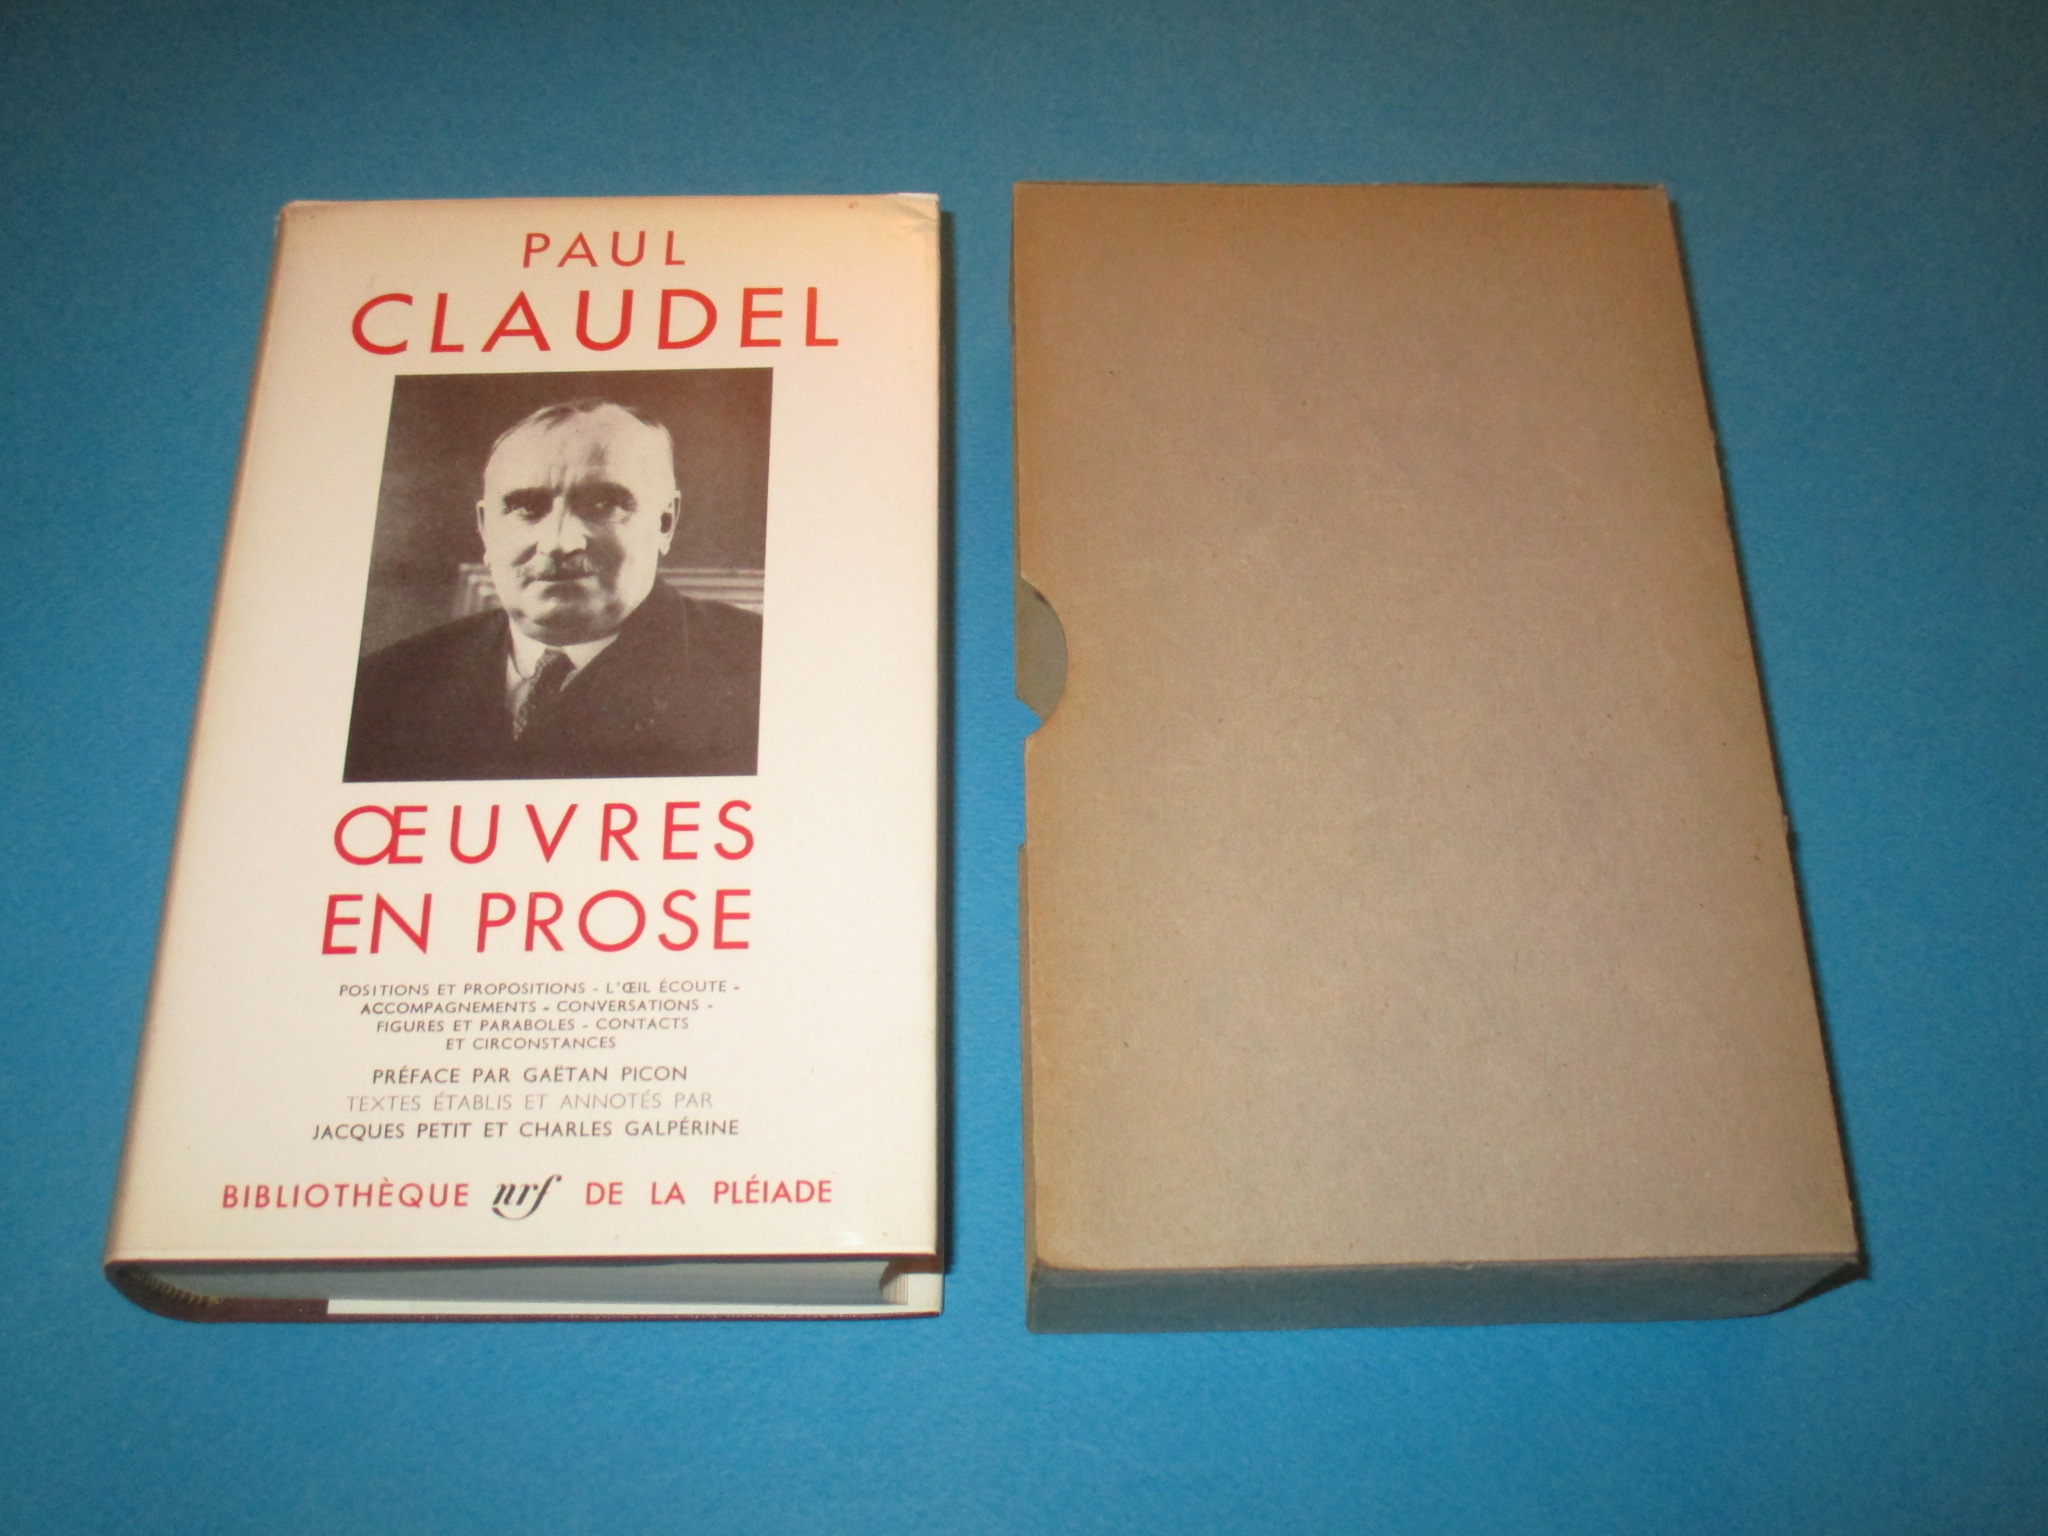 Oeuvres en prose, Paul Claudel, La Pléiade 1965